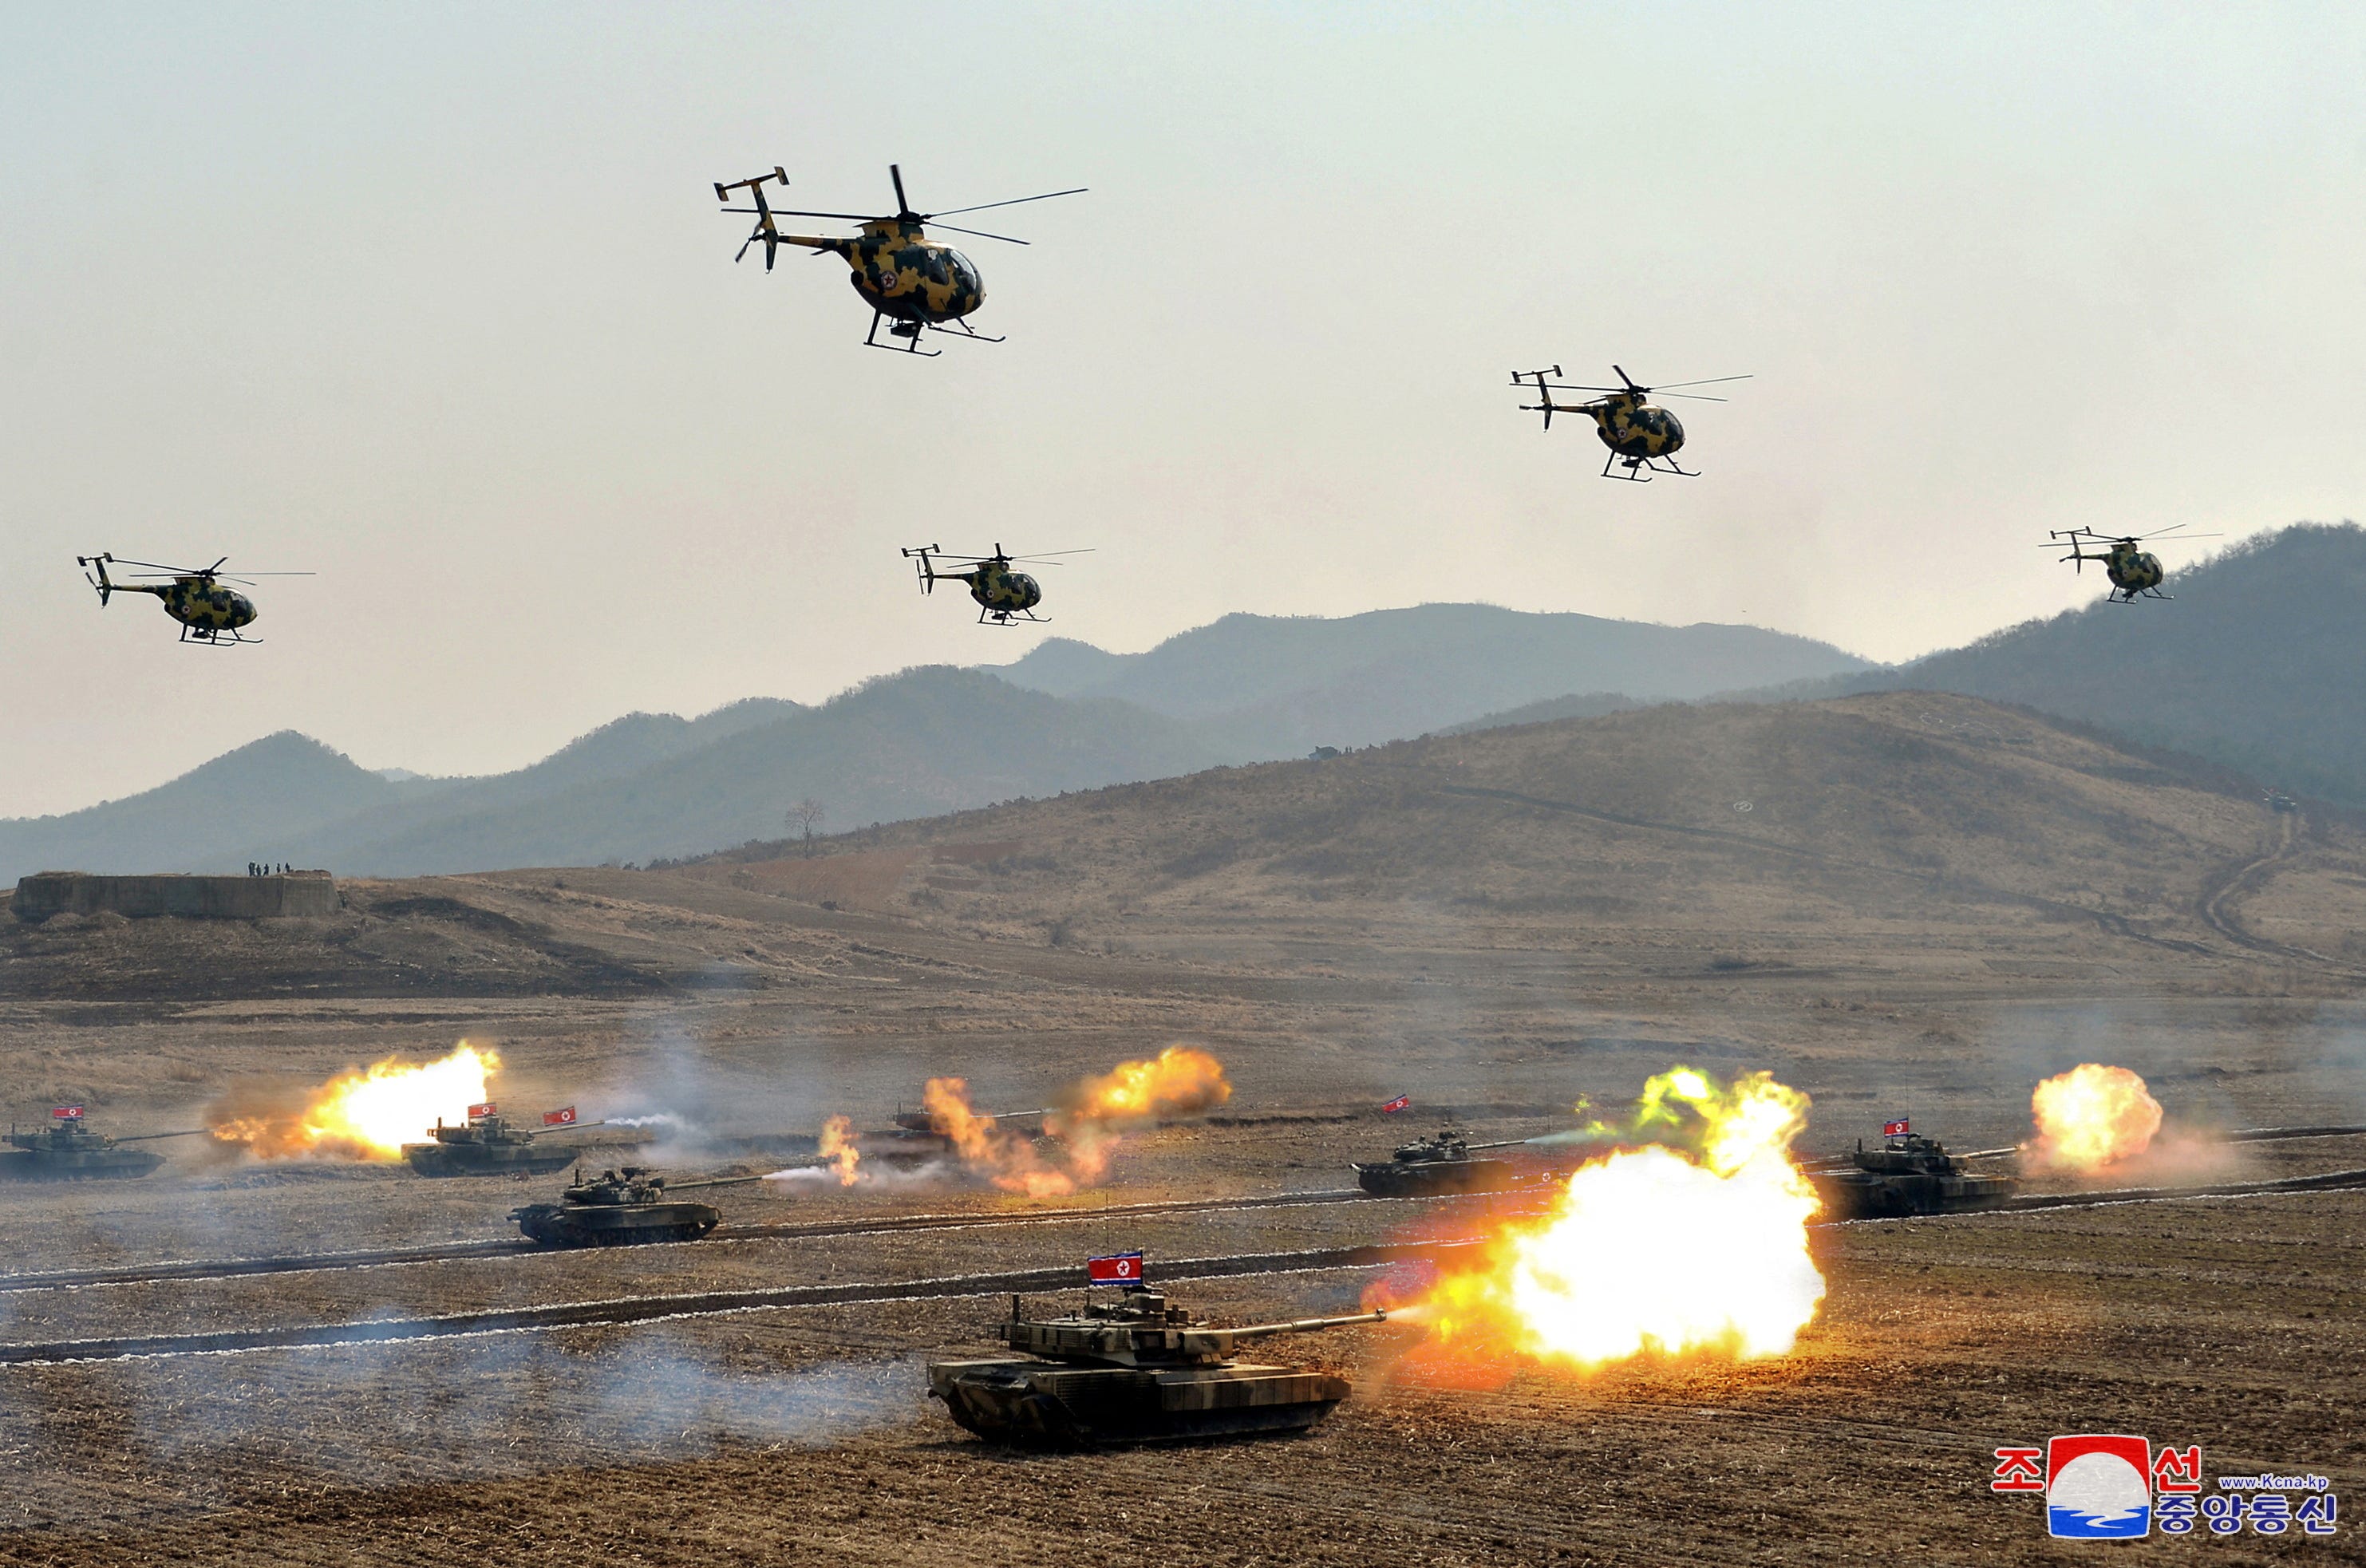 Während einer Militärdemonstration in Nordkorea fliegen Militärhubschrauber über schießenden Panzern.